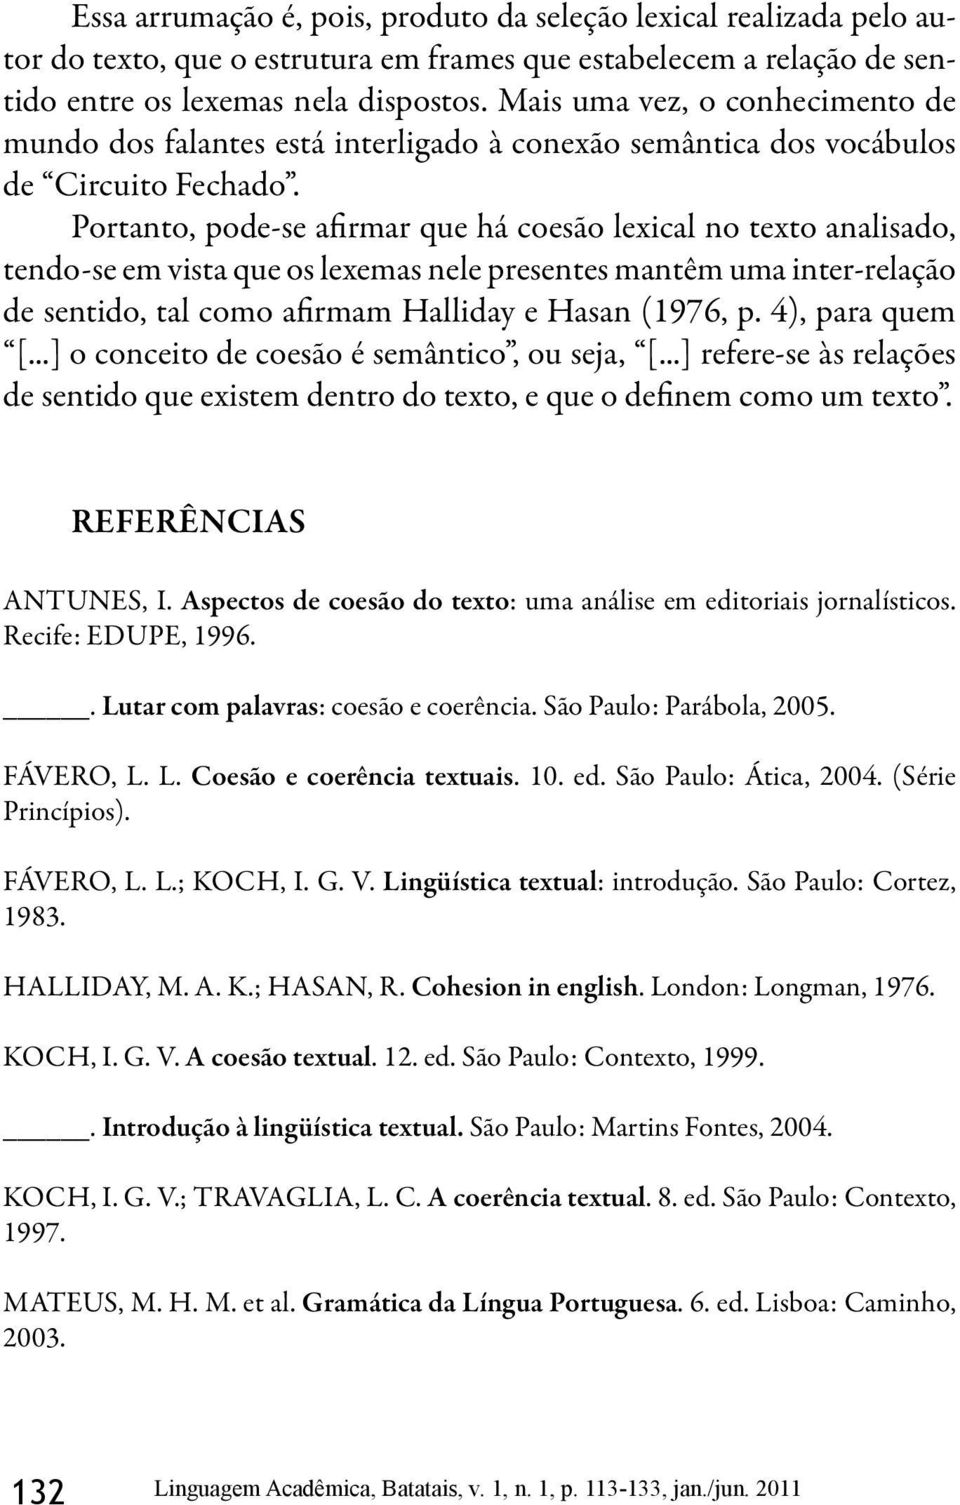 Portanto, pode-se afirmar que há coesão lexical no texto analisado, tendo-se em vista que os lexemas nele presentes mantêm uma inter-relação de sentido, tal como afirmam Halliday e Hasan (1976, p.